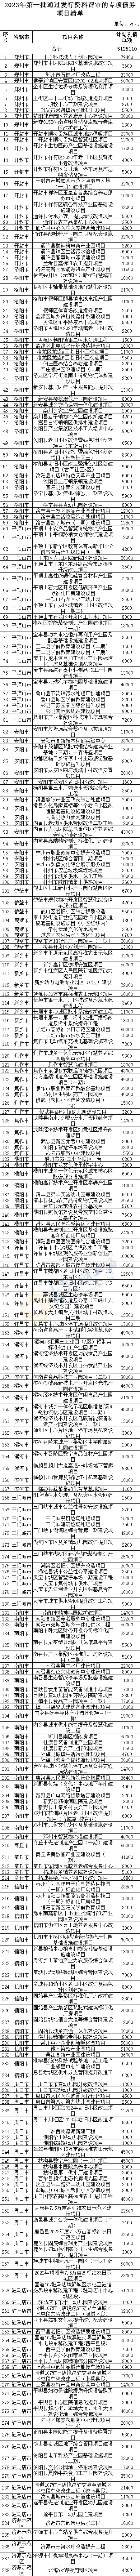 河南拟发行512.5亿元专项债，288个通过评审项目公示